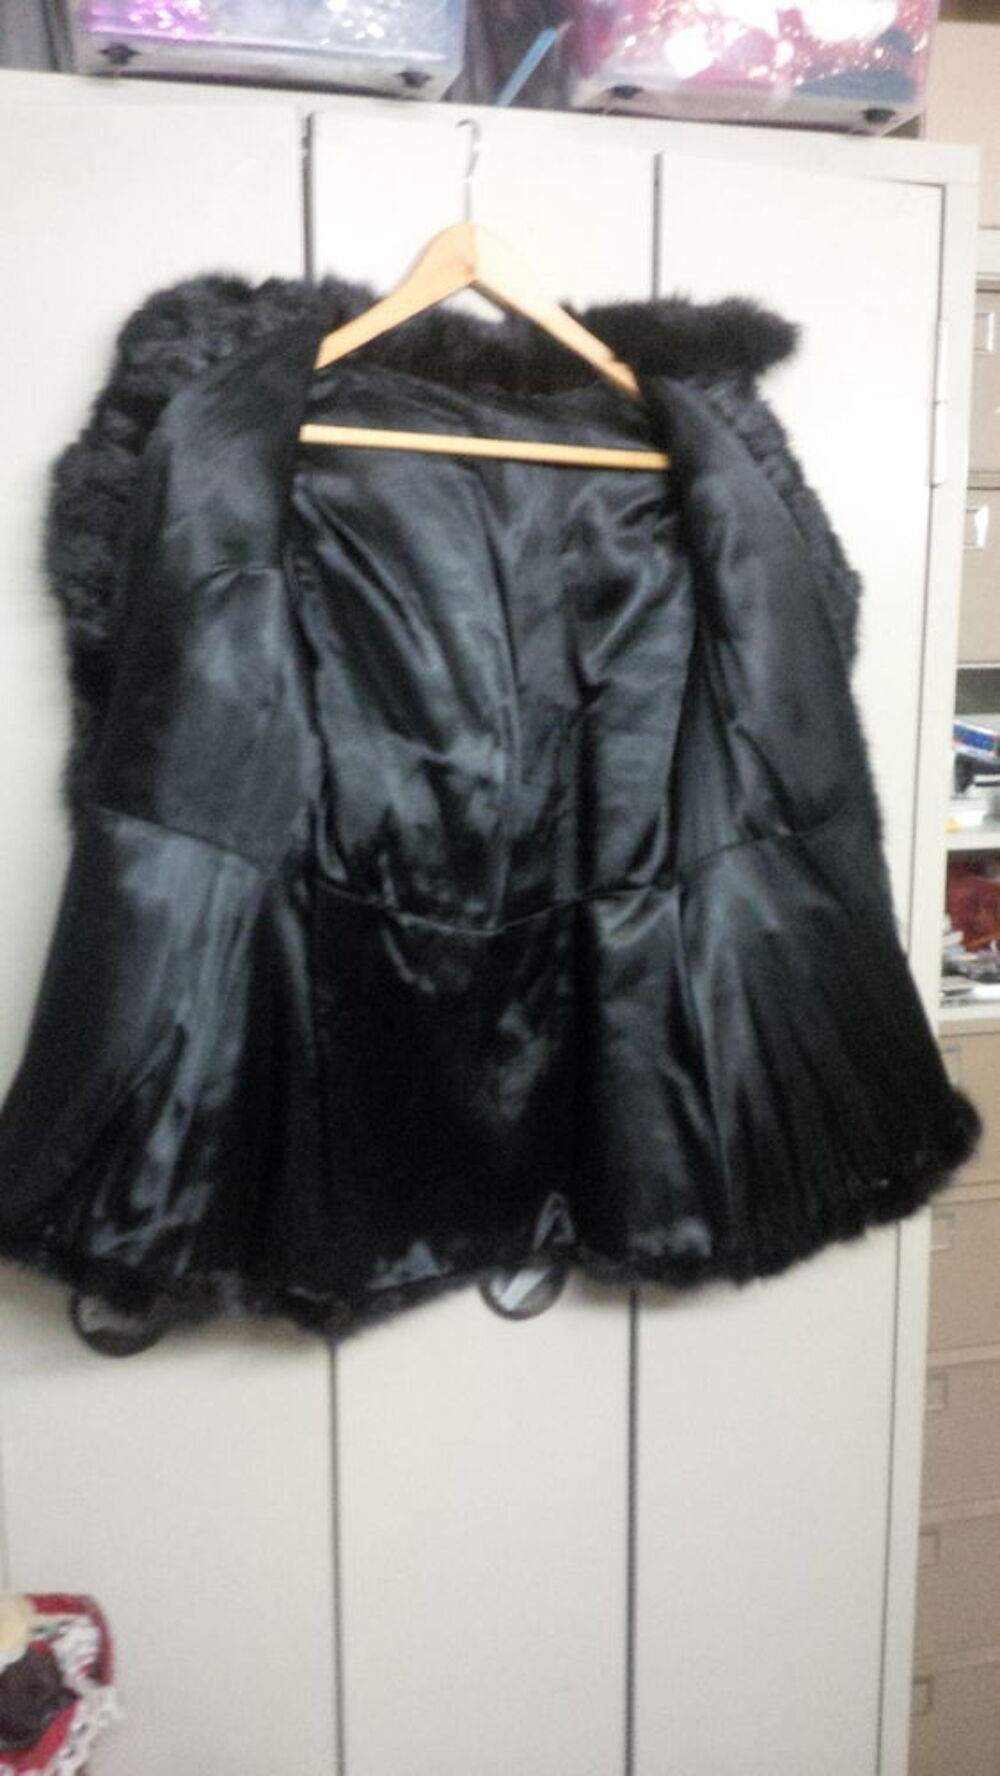 Manteau femme vison noir
Vtements